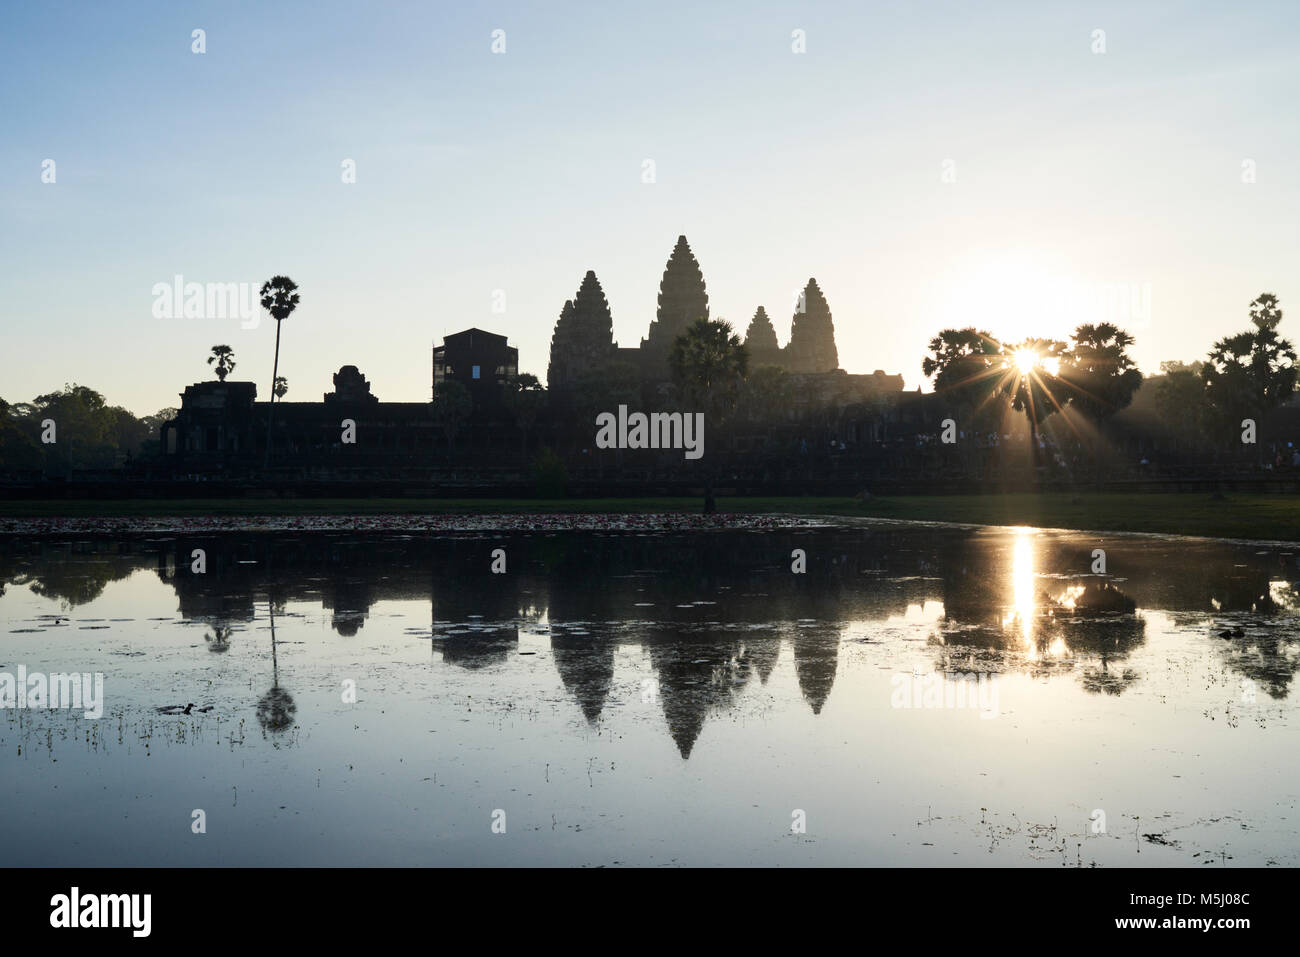 Vue panoramique sur Angkor Wat temple bouddhiste au lever du soleil avec la magie de la lumière et sa réflexion sur le lac. Siem Reap, Cambodge. Banque D'Images